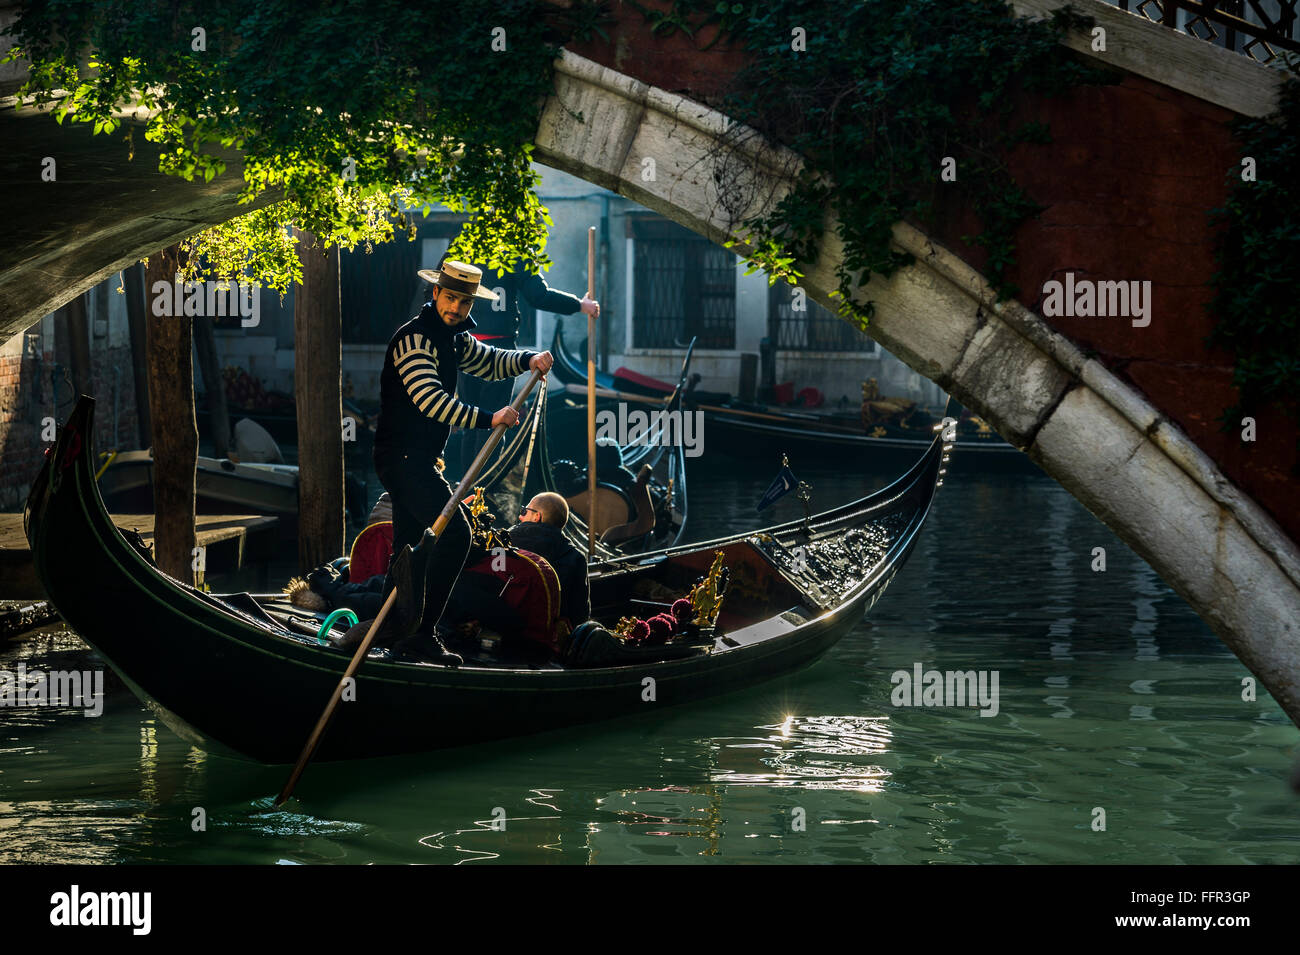 Petit canal, gondole avec gondolier voyages sous un pont, Venise, Vénétie, Italie Banque D'Images